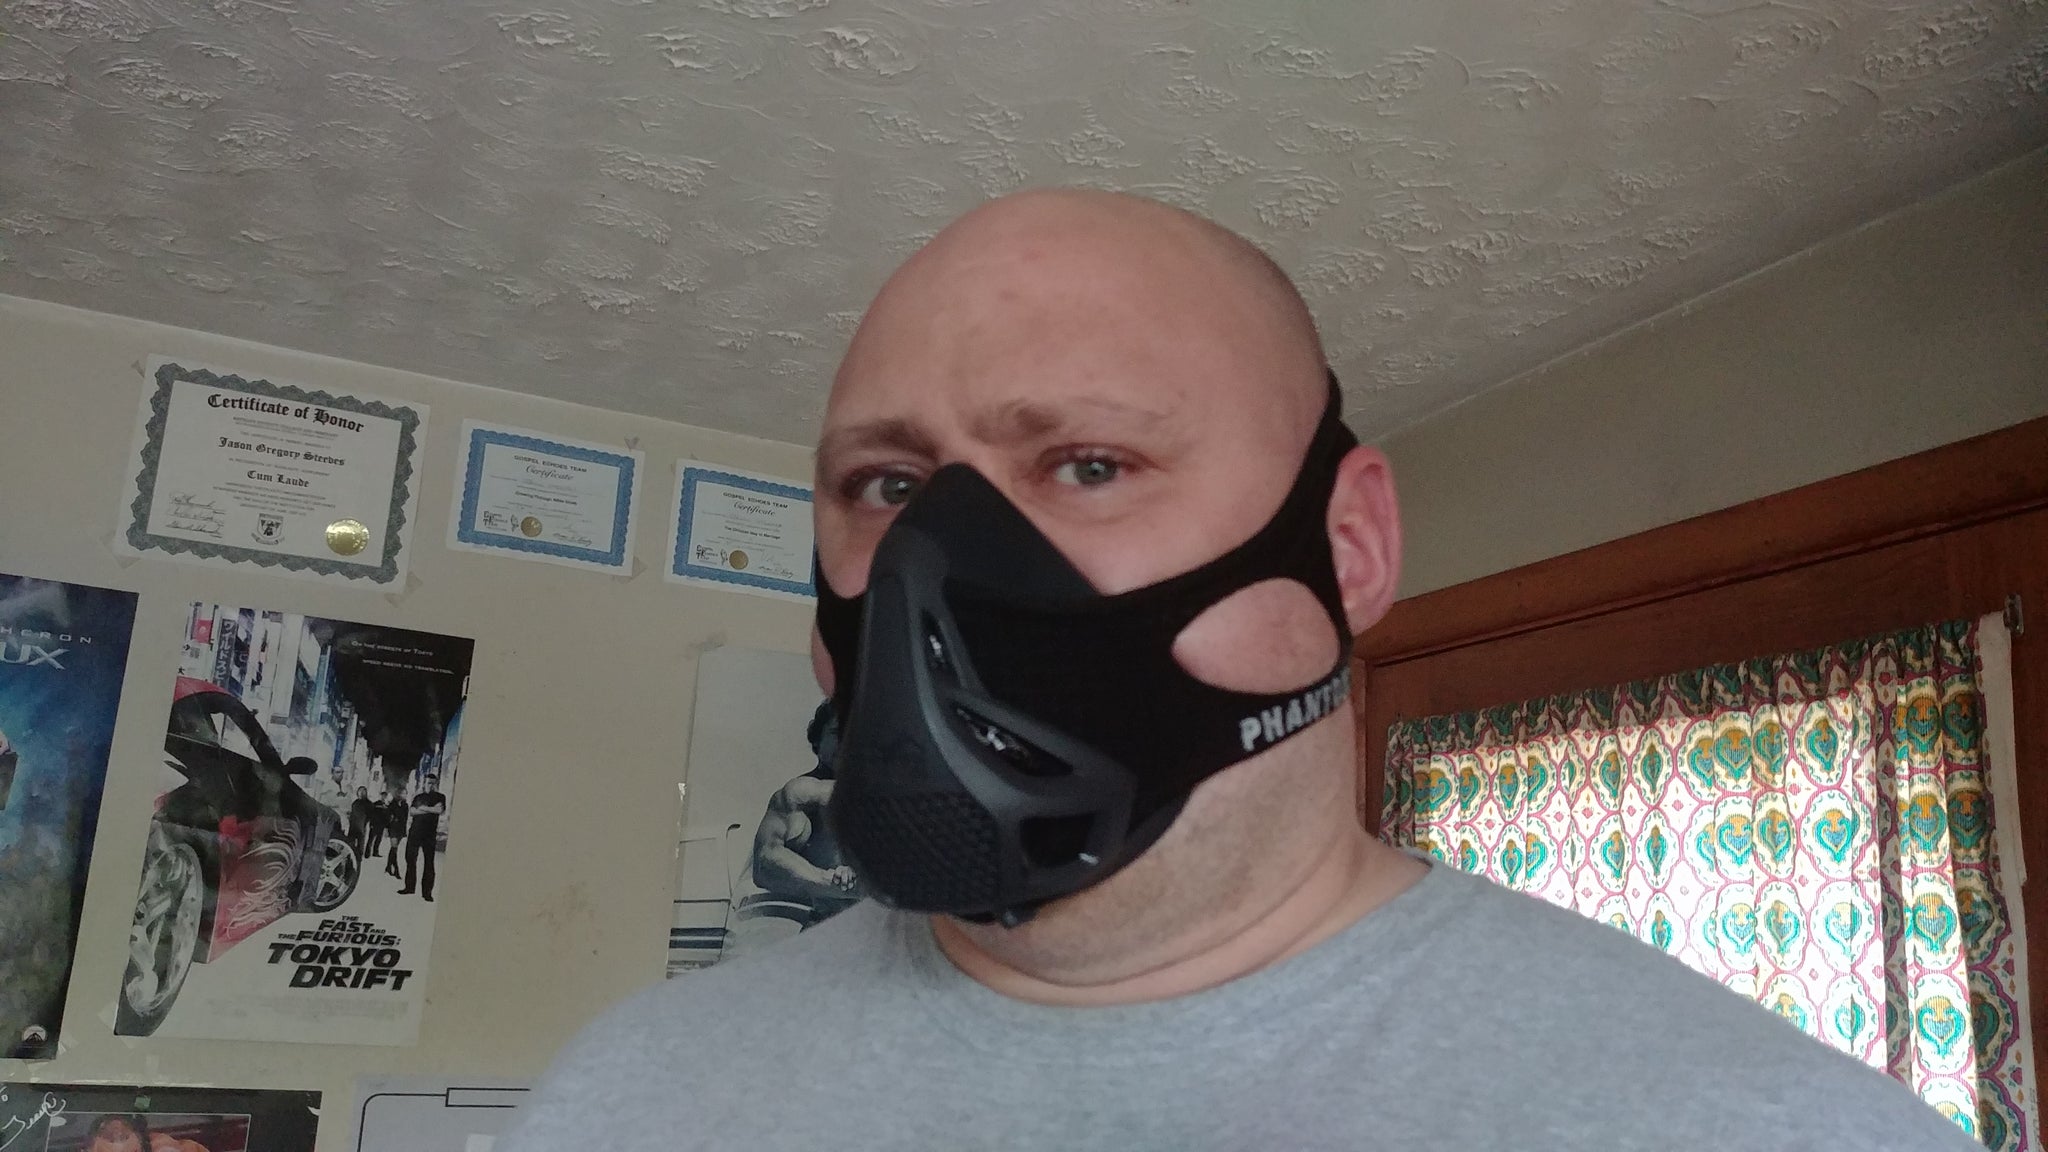 Training Mask 3.0